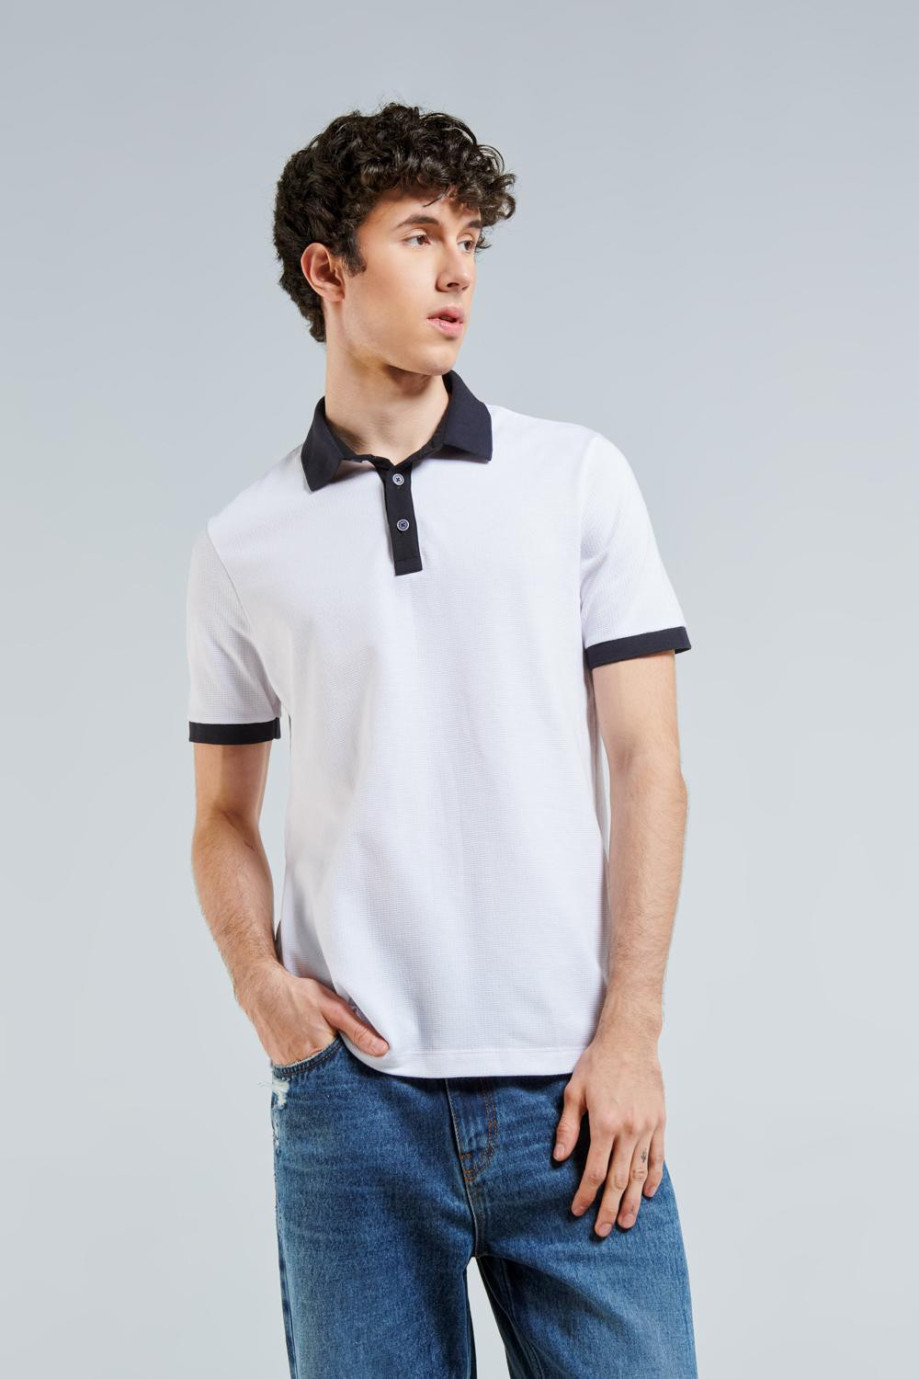 Camiseta polo blanca manga corta con puños y cuello en contraste